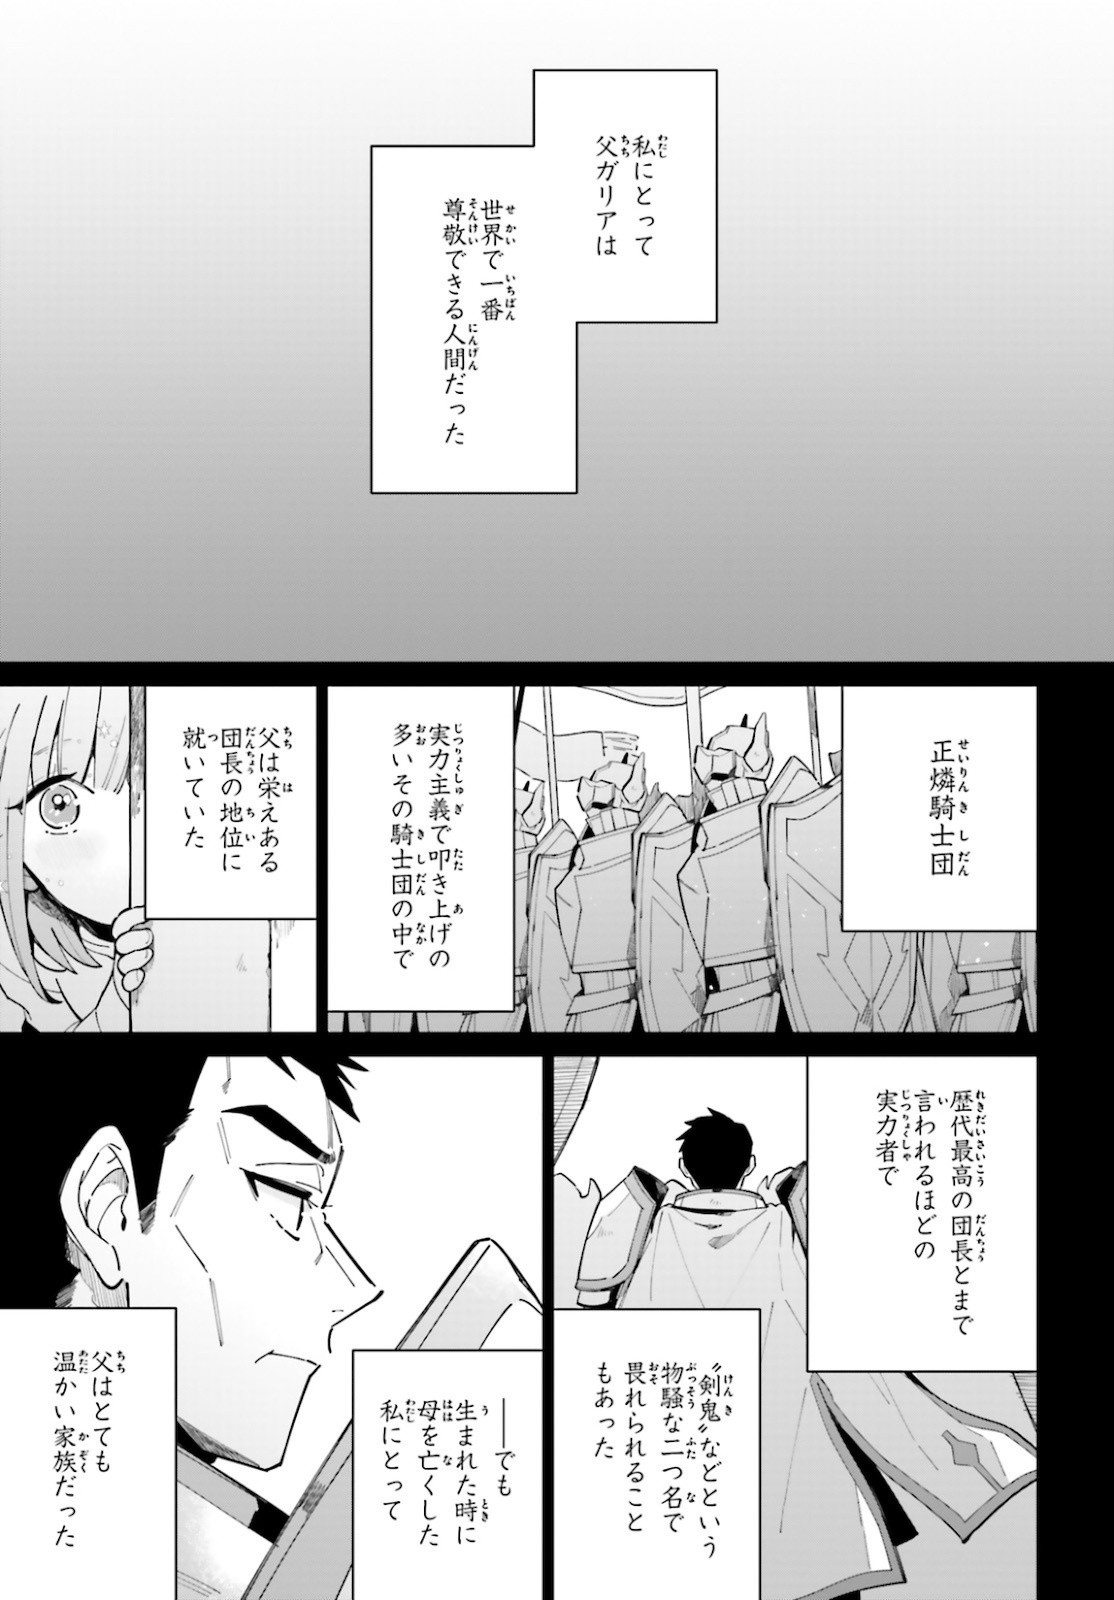 Kage-no-Eiyuu-no-Nichijou-tan-Ichi-no-Yuusha-no-Ura-de-An'yaku-Shite-ita-Saikyou-no-Eijento-Soshiki-ga-Kaitai-sareta-no-de-Shoutai-Kakushite-Hito-nami-no-Nichijou-o-Ouka-suru - Chapter 08 - Page 5